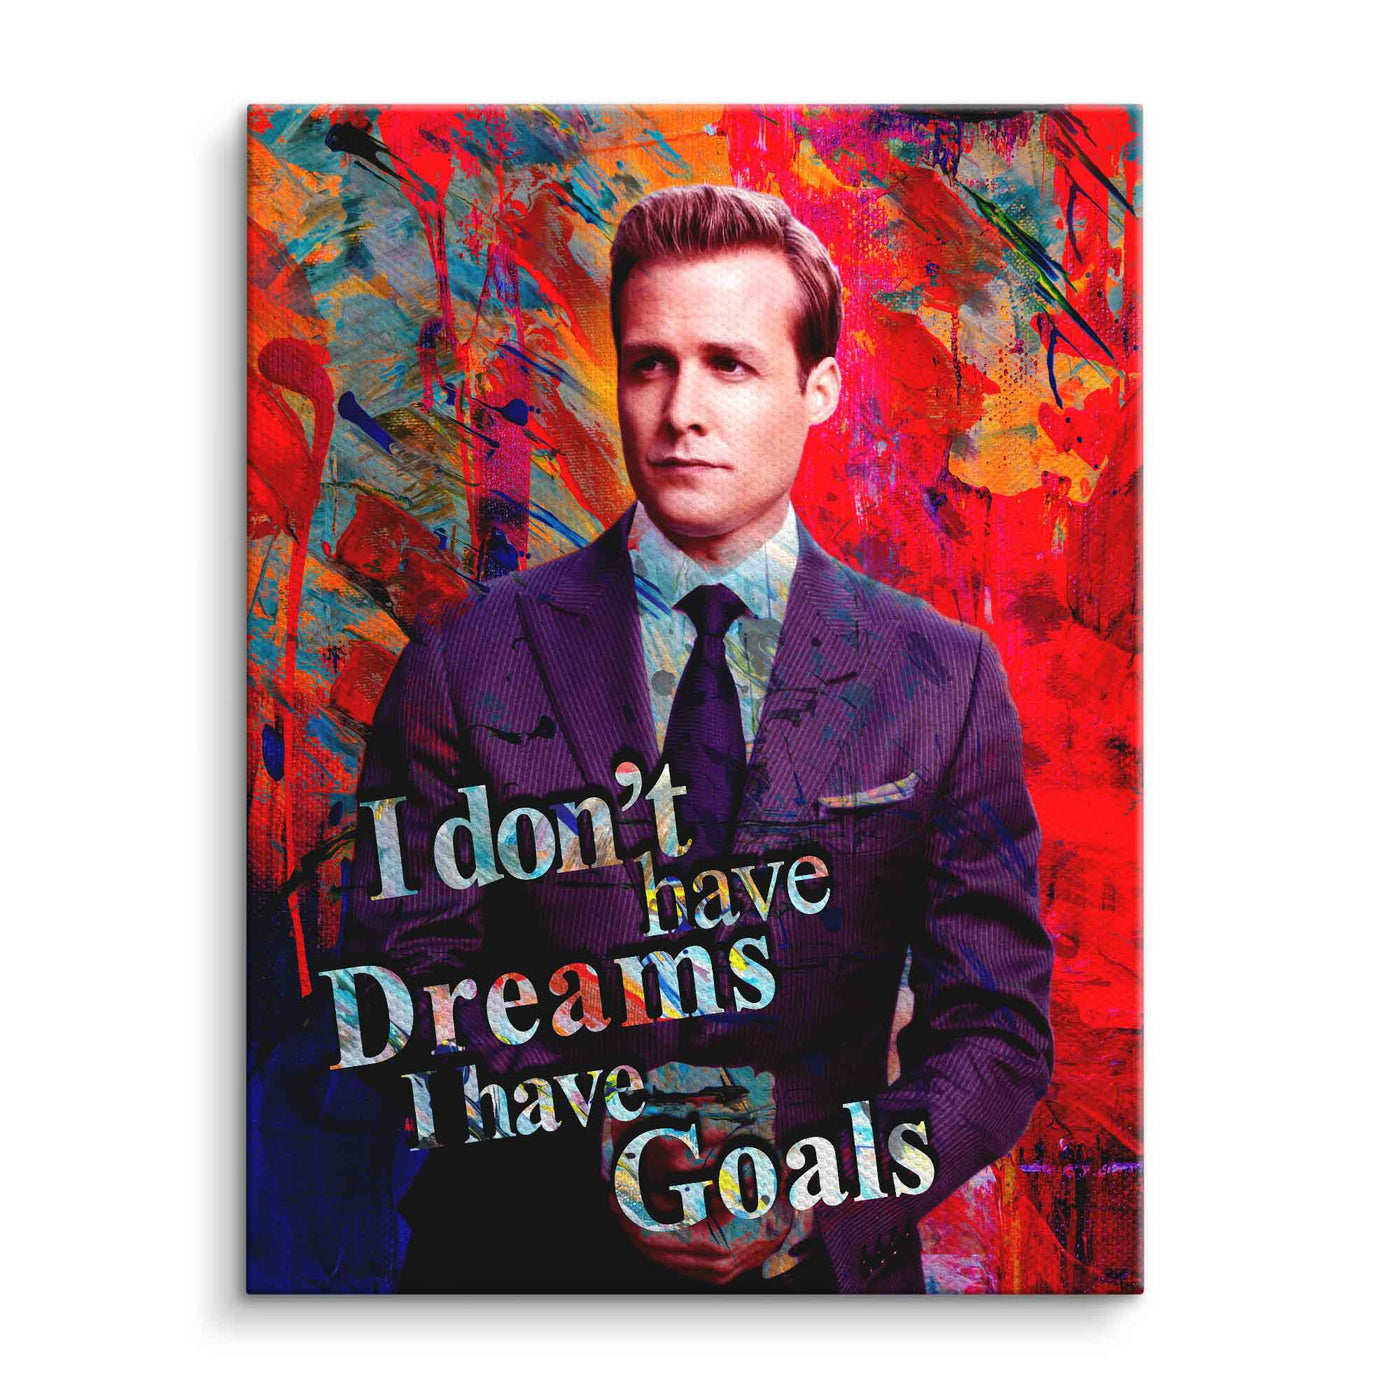 I have Goals